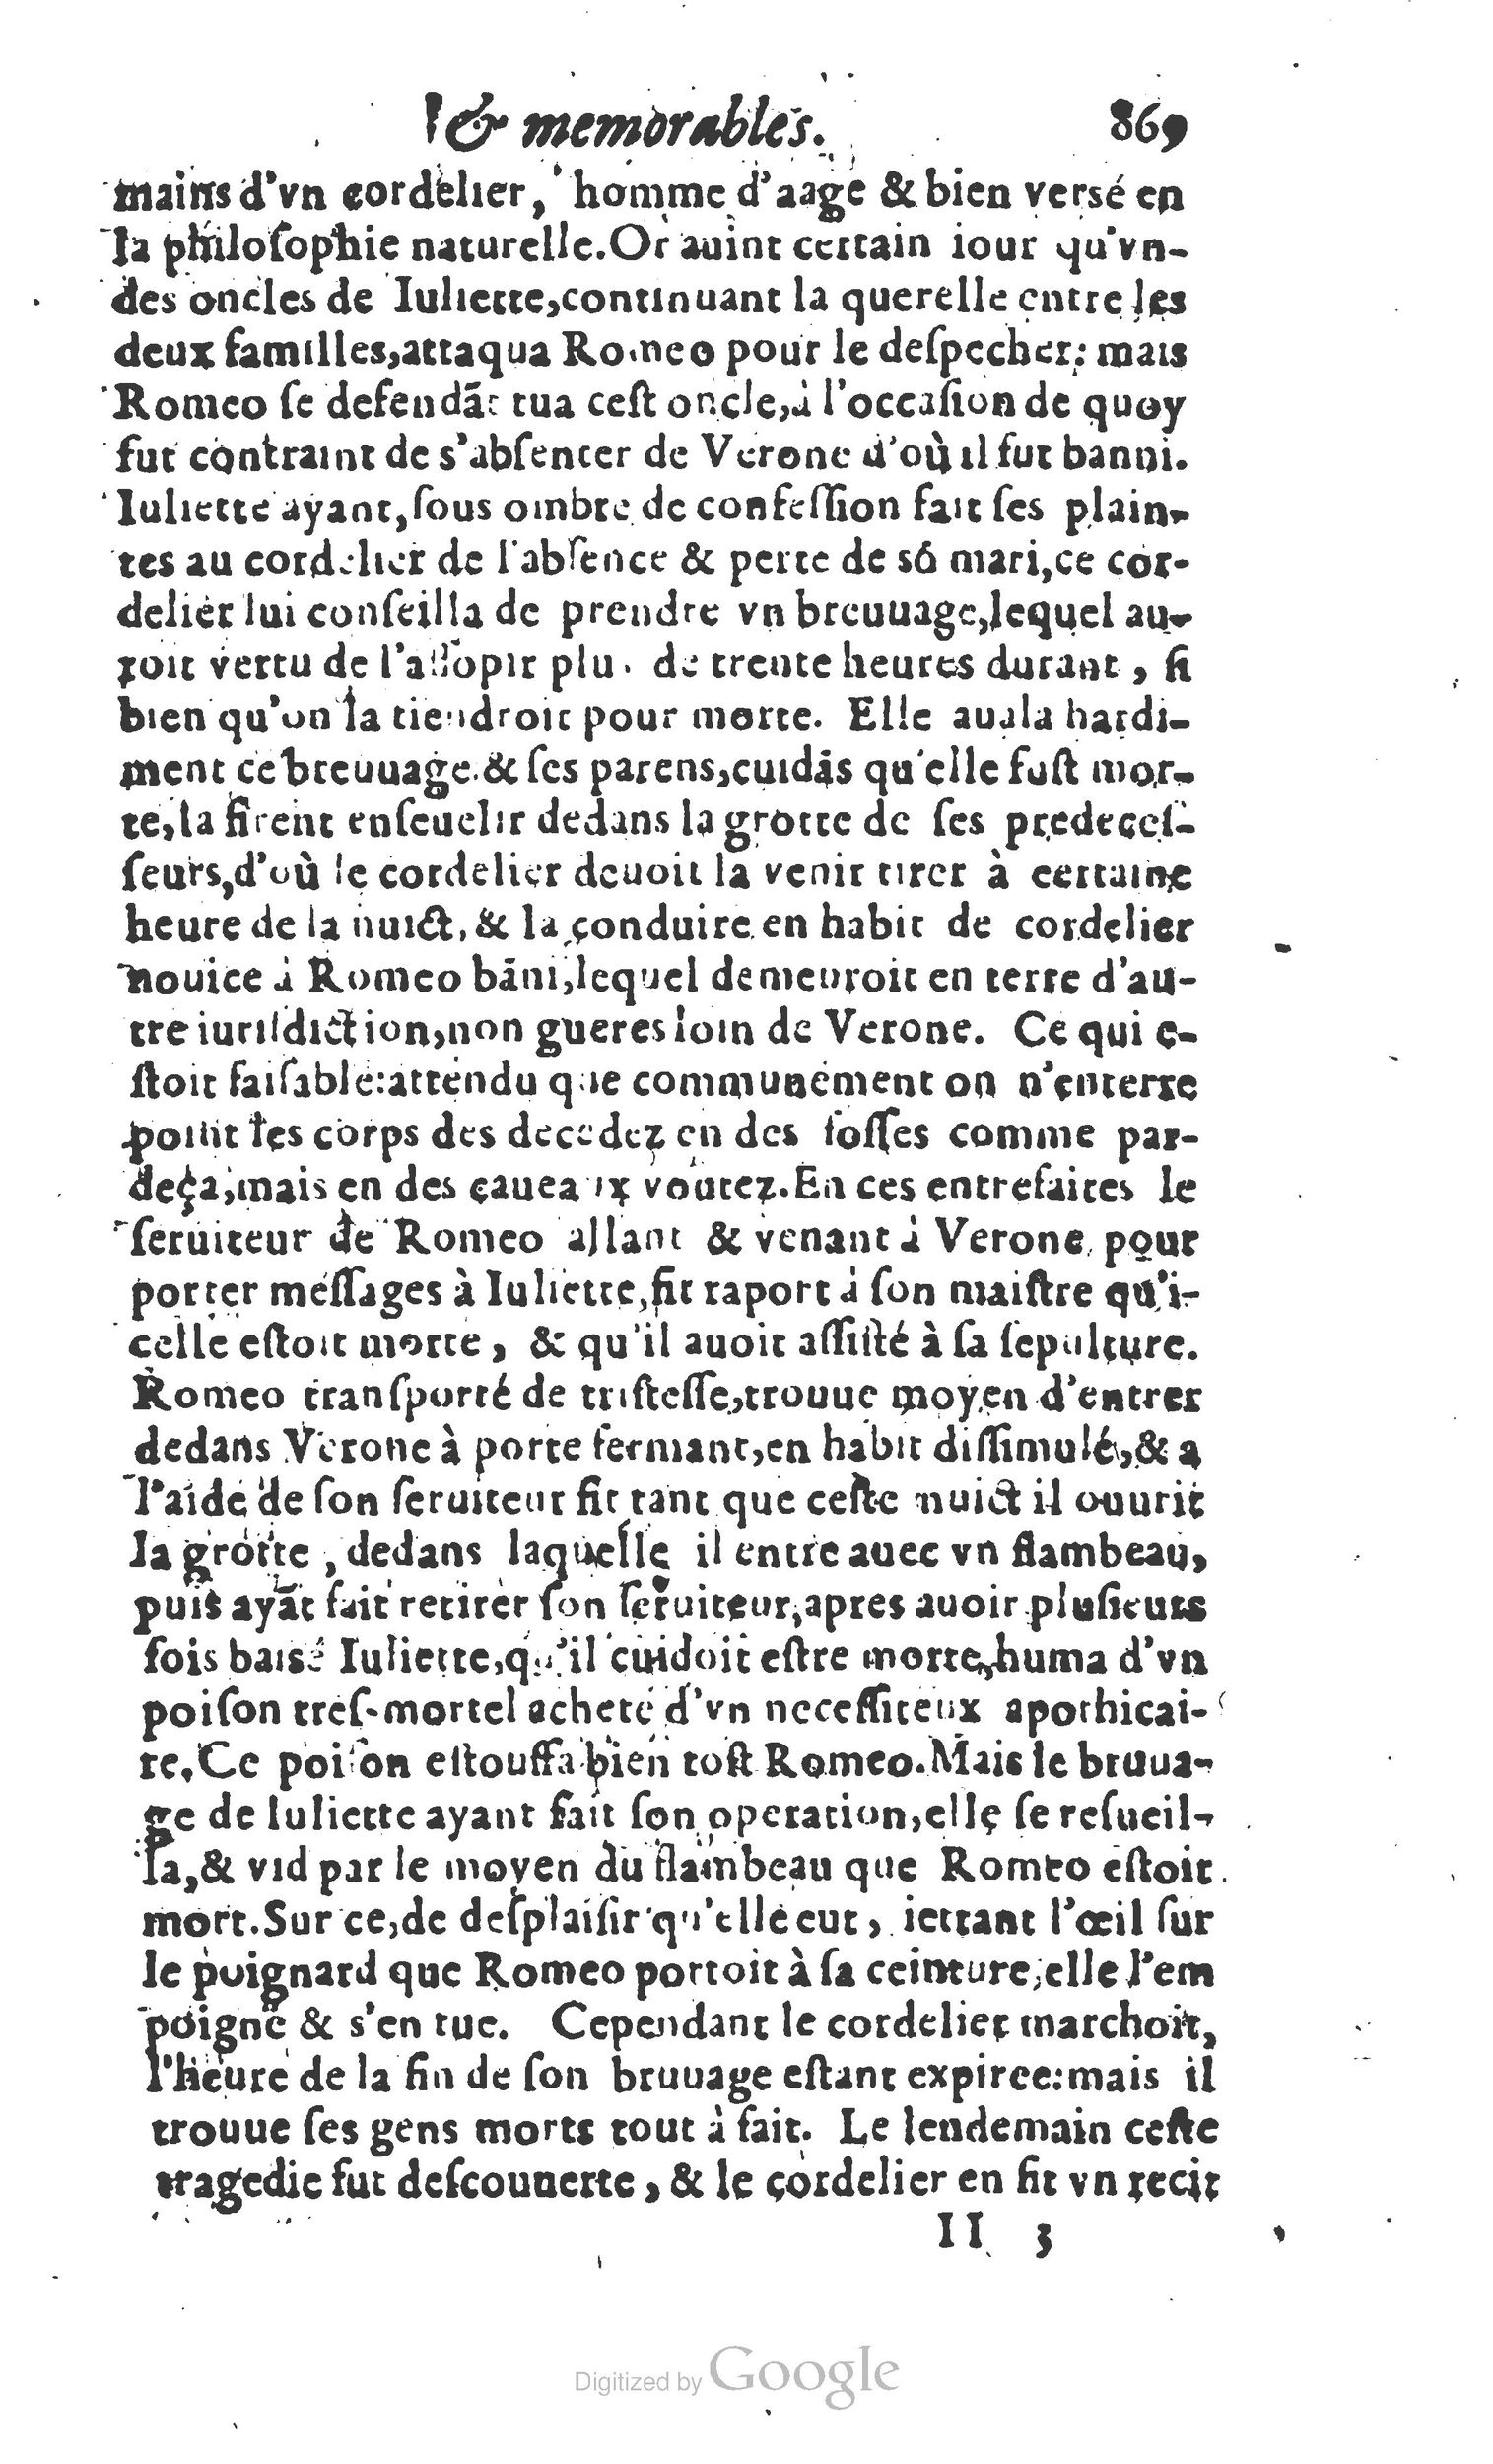 1610 Trésor d’histoires admirables et mémorables de nostre temps Marceau Princeton_Page_0890.jpg